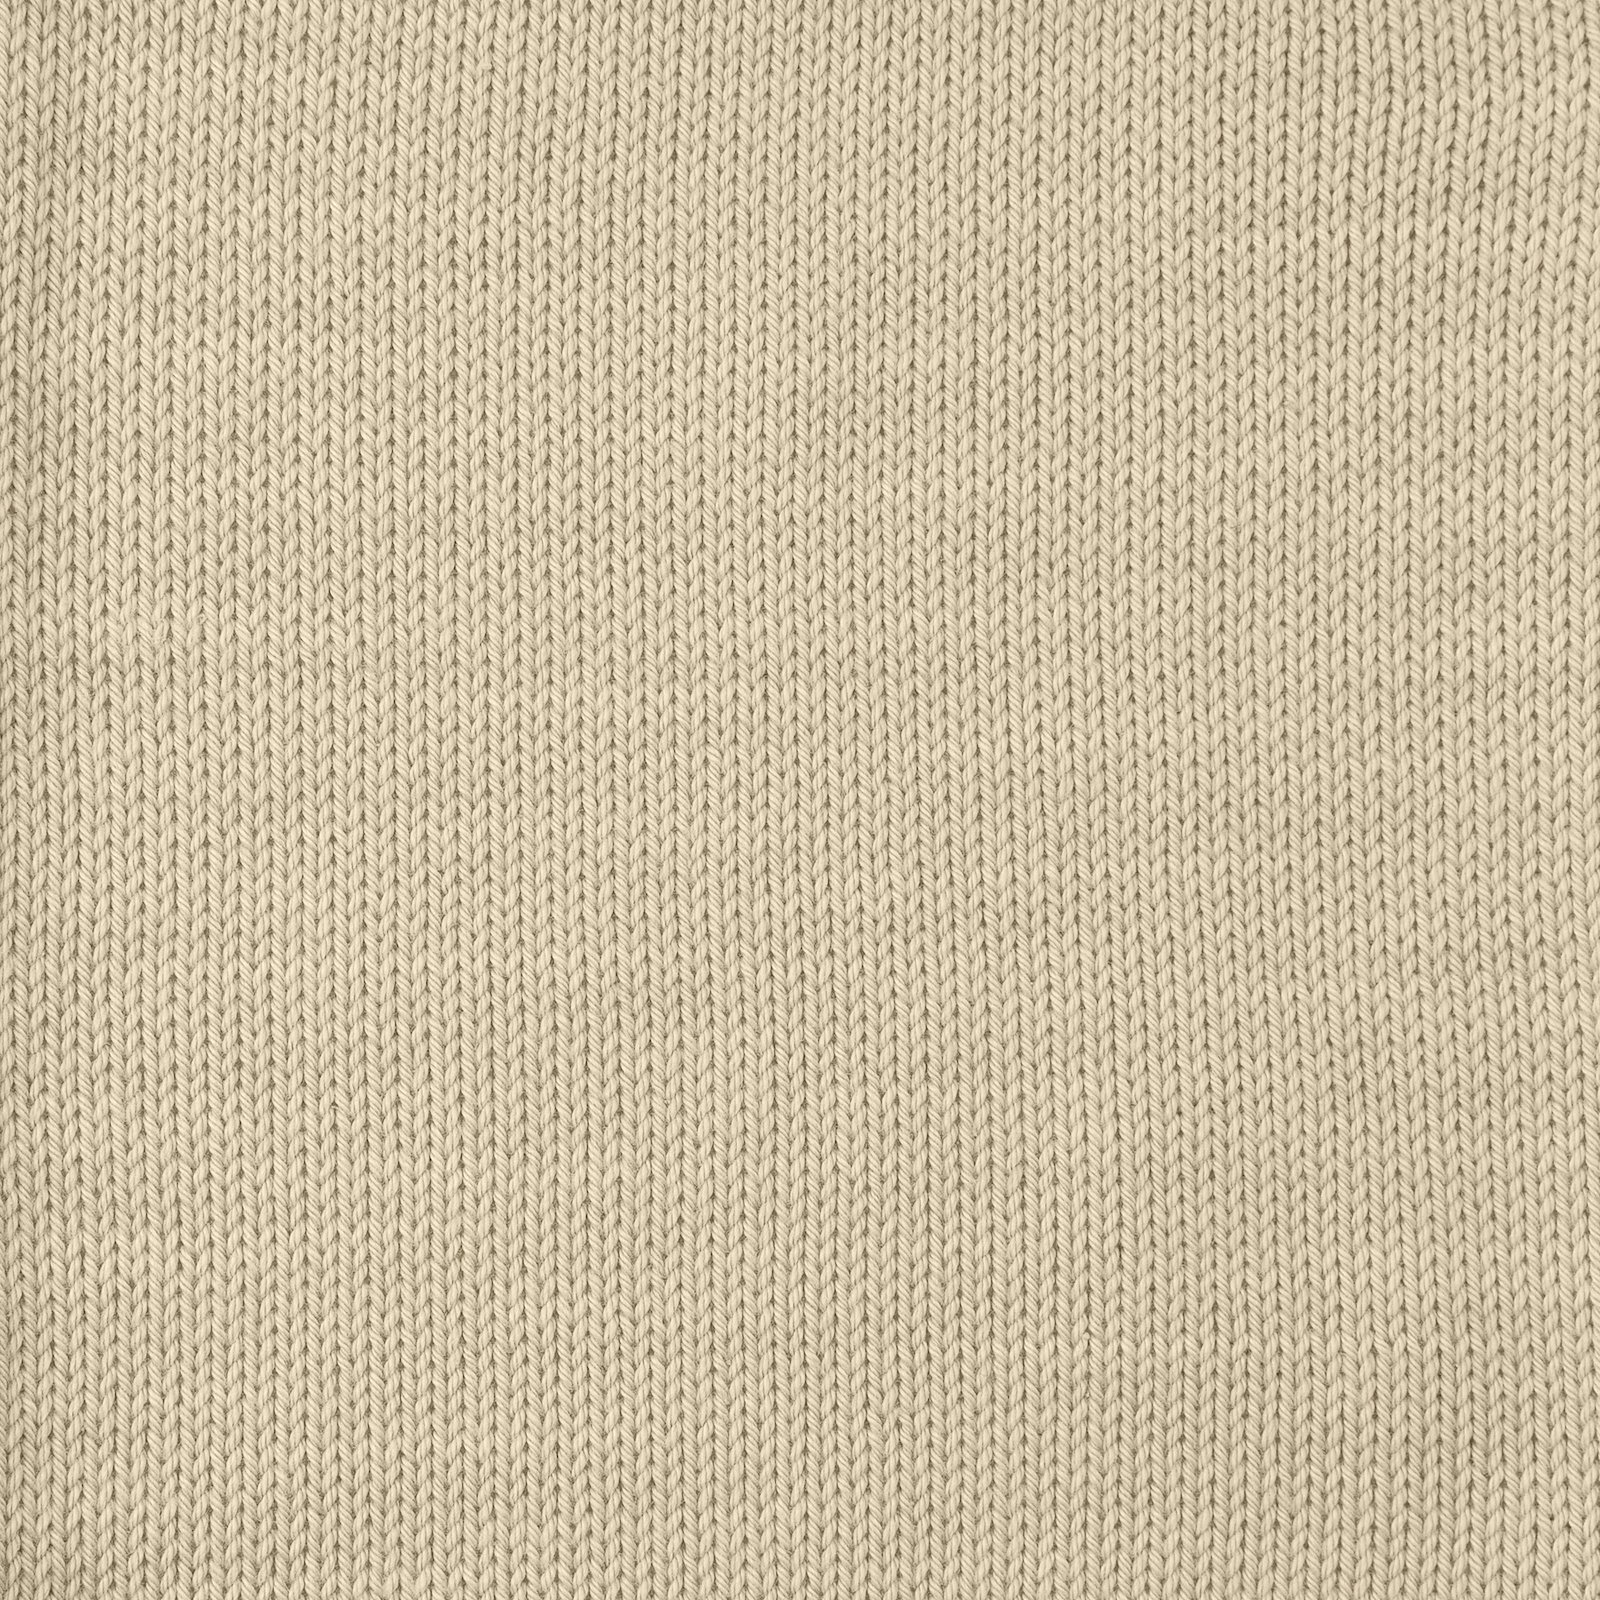 FRAYA, 100% cotton yarn "Colourful", sand 90060038_sskit